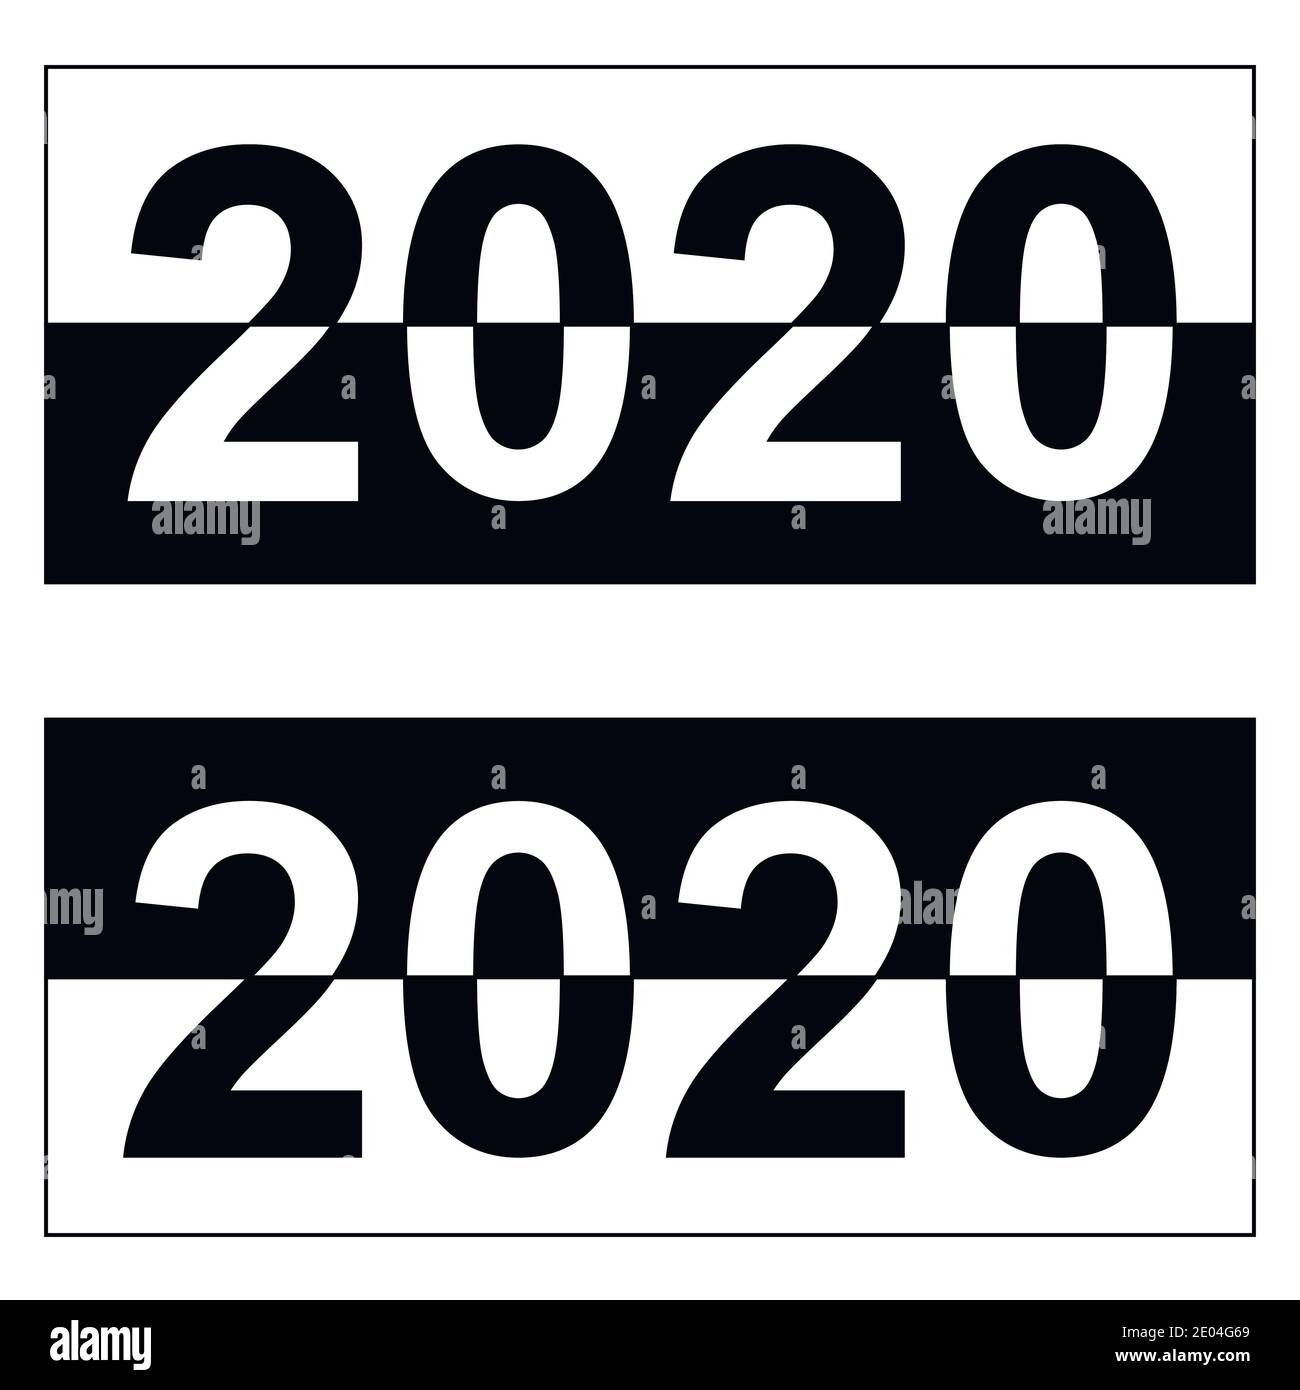 Felice anno nuovo 2020, banner bianco e nero monocromatico, data cifra vettoriale per l'anno 2020 la distribuzione dei colori bianco e nero Illustrazione Vettoriale